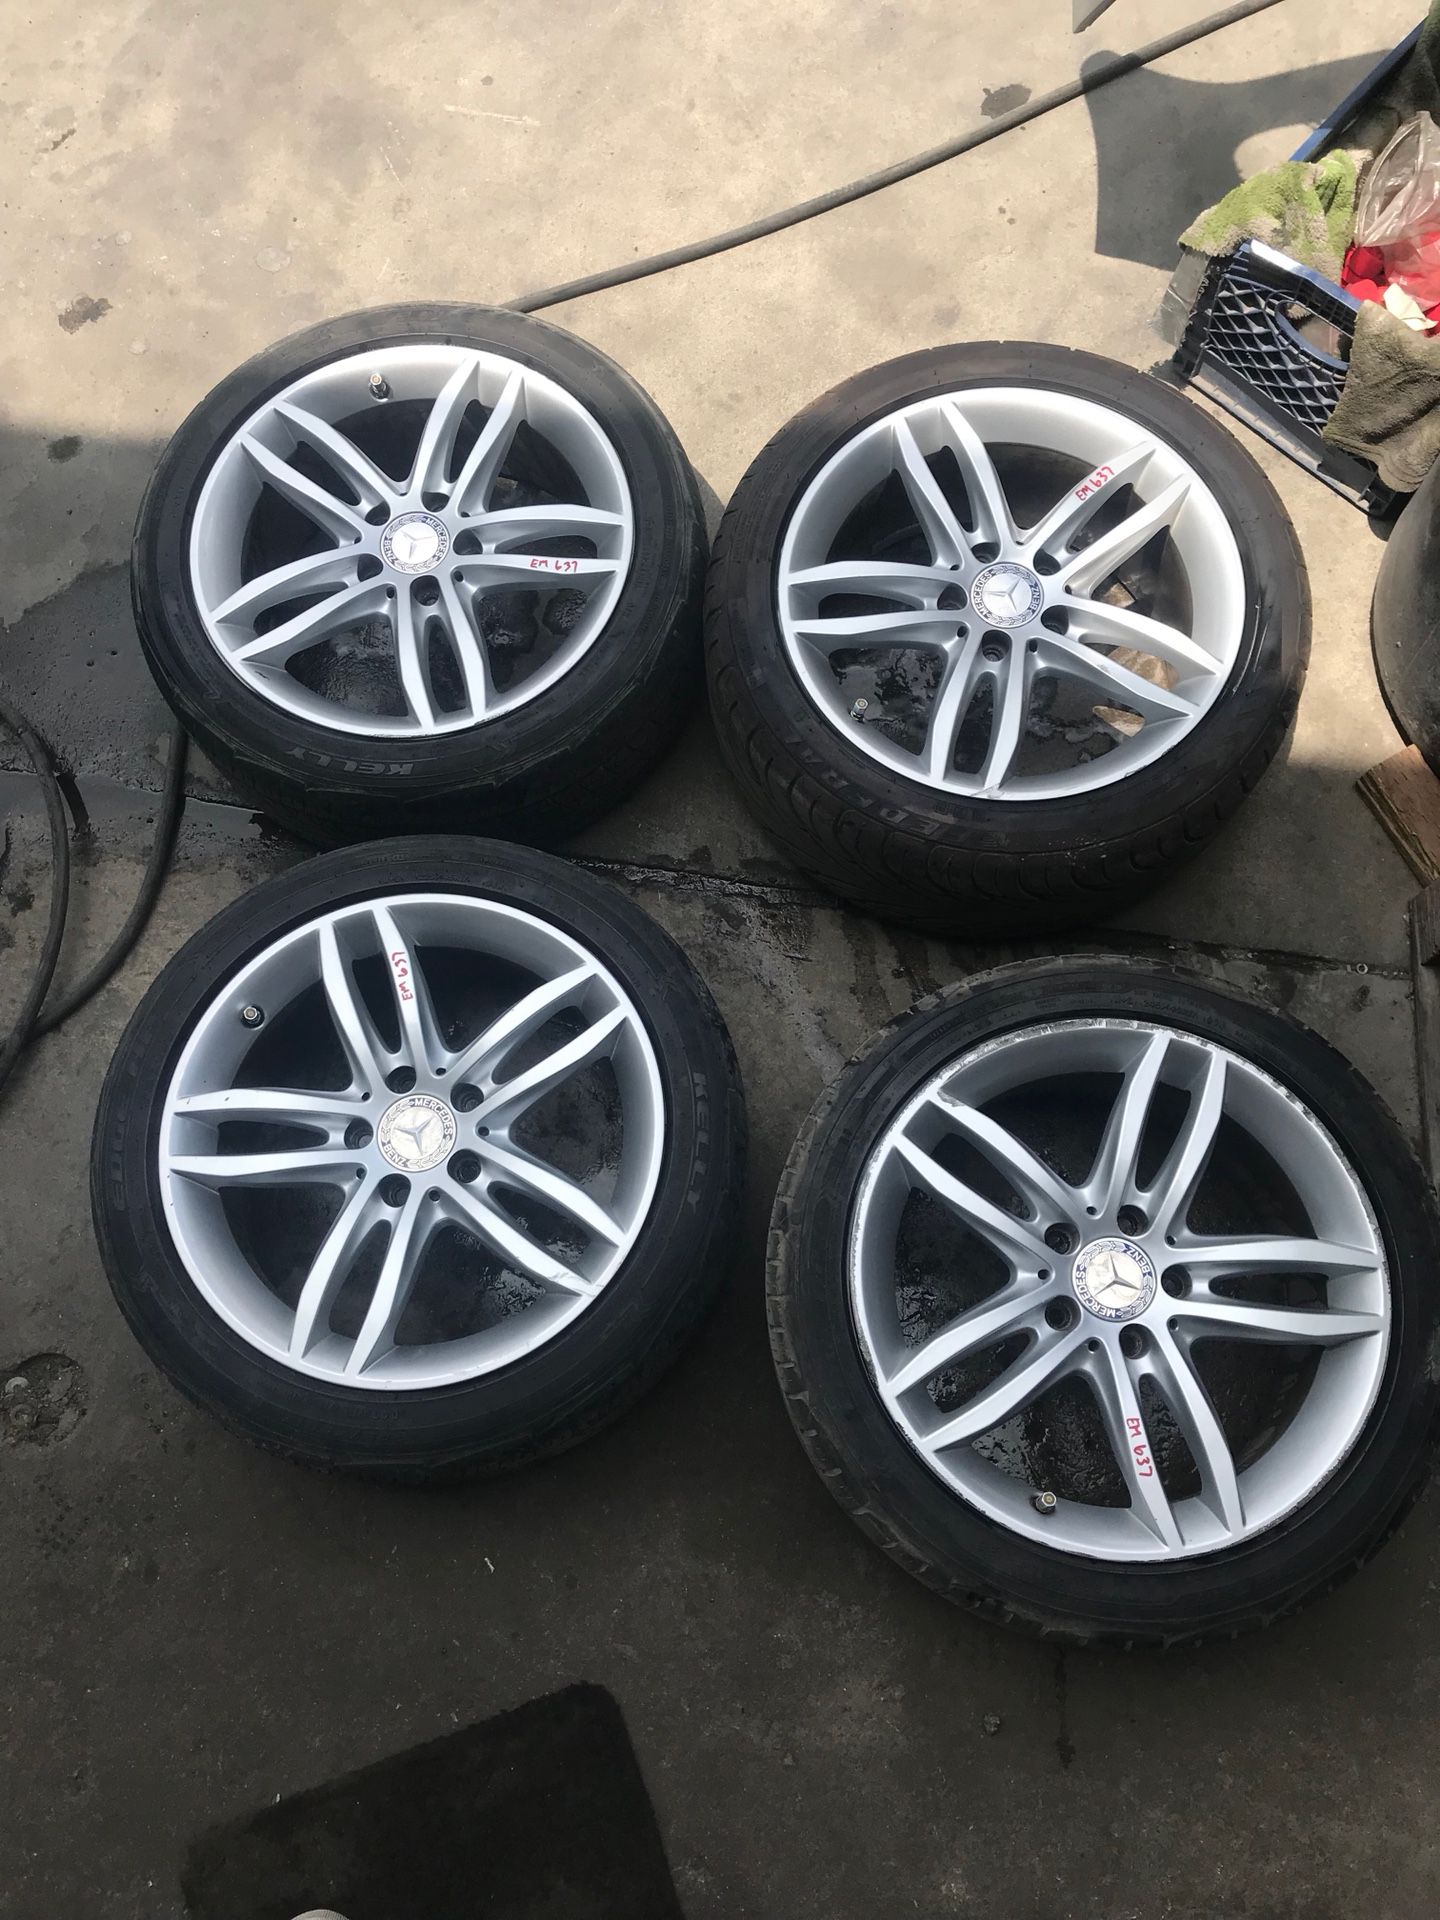 2014 Mercedes C250 set 17” wheels tires